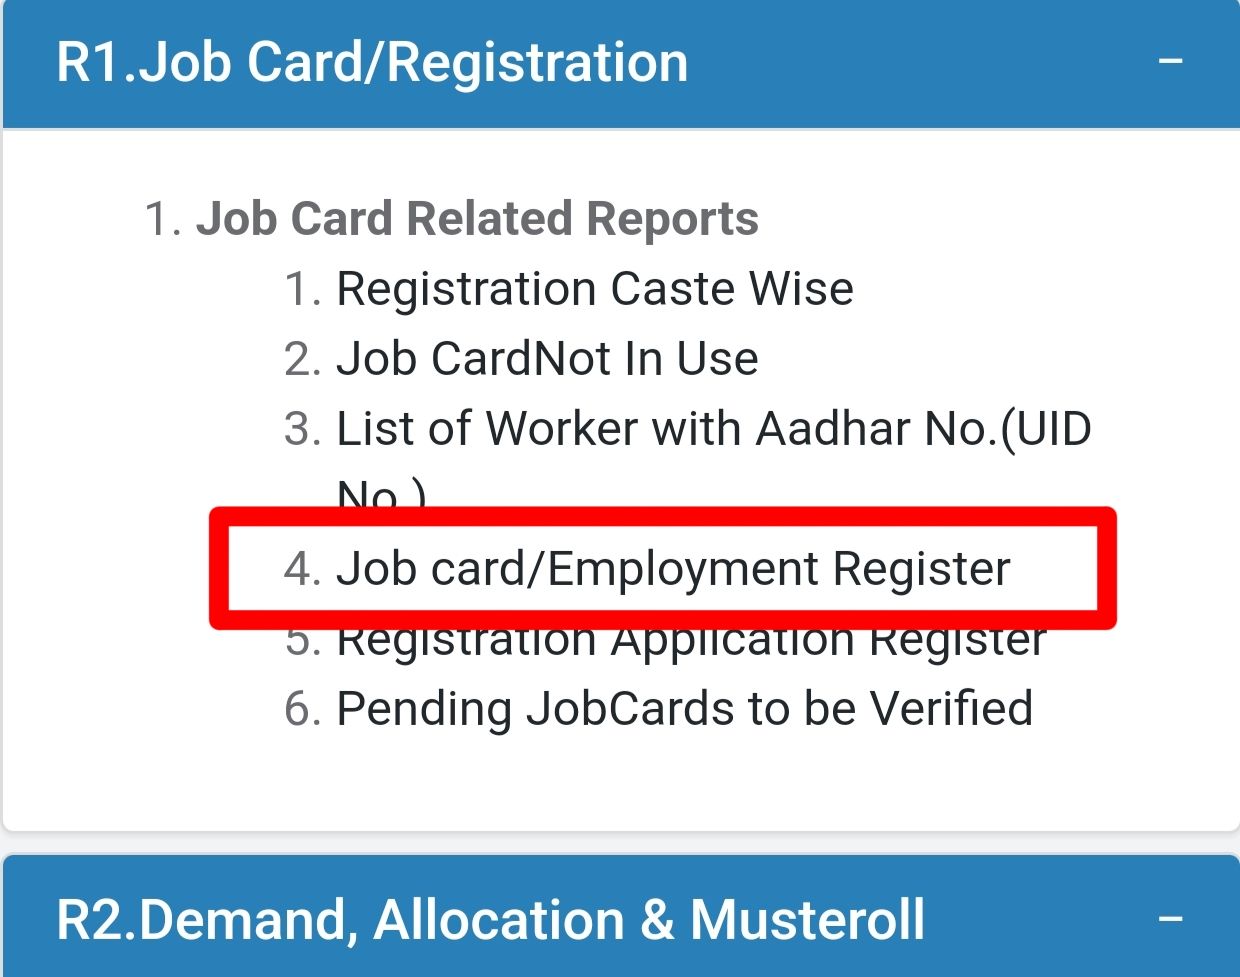 Job card/Employment Register